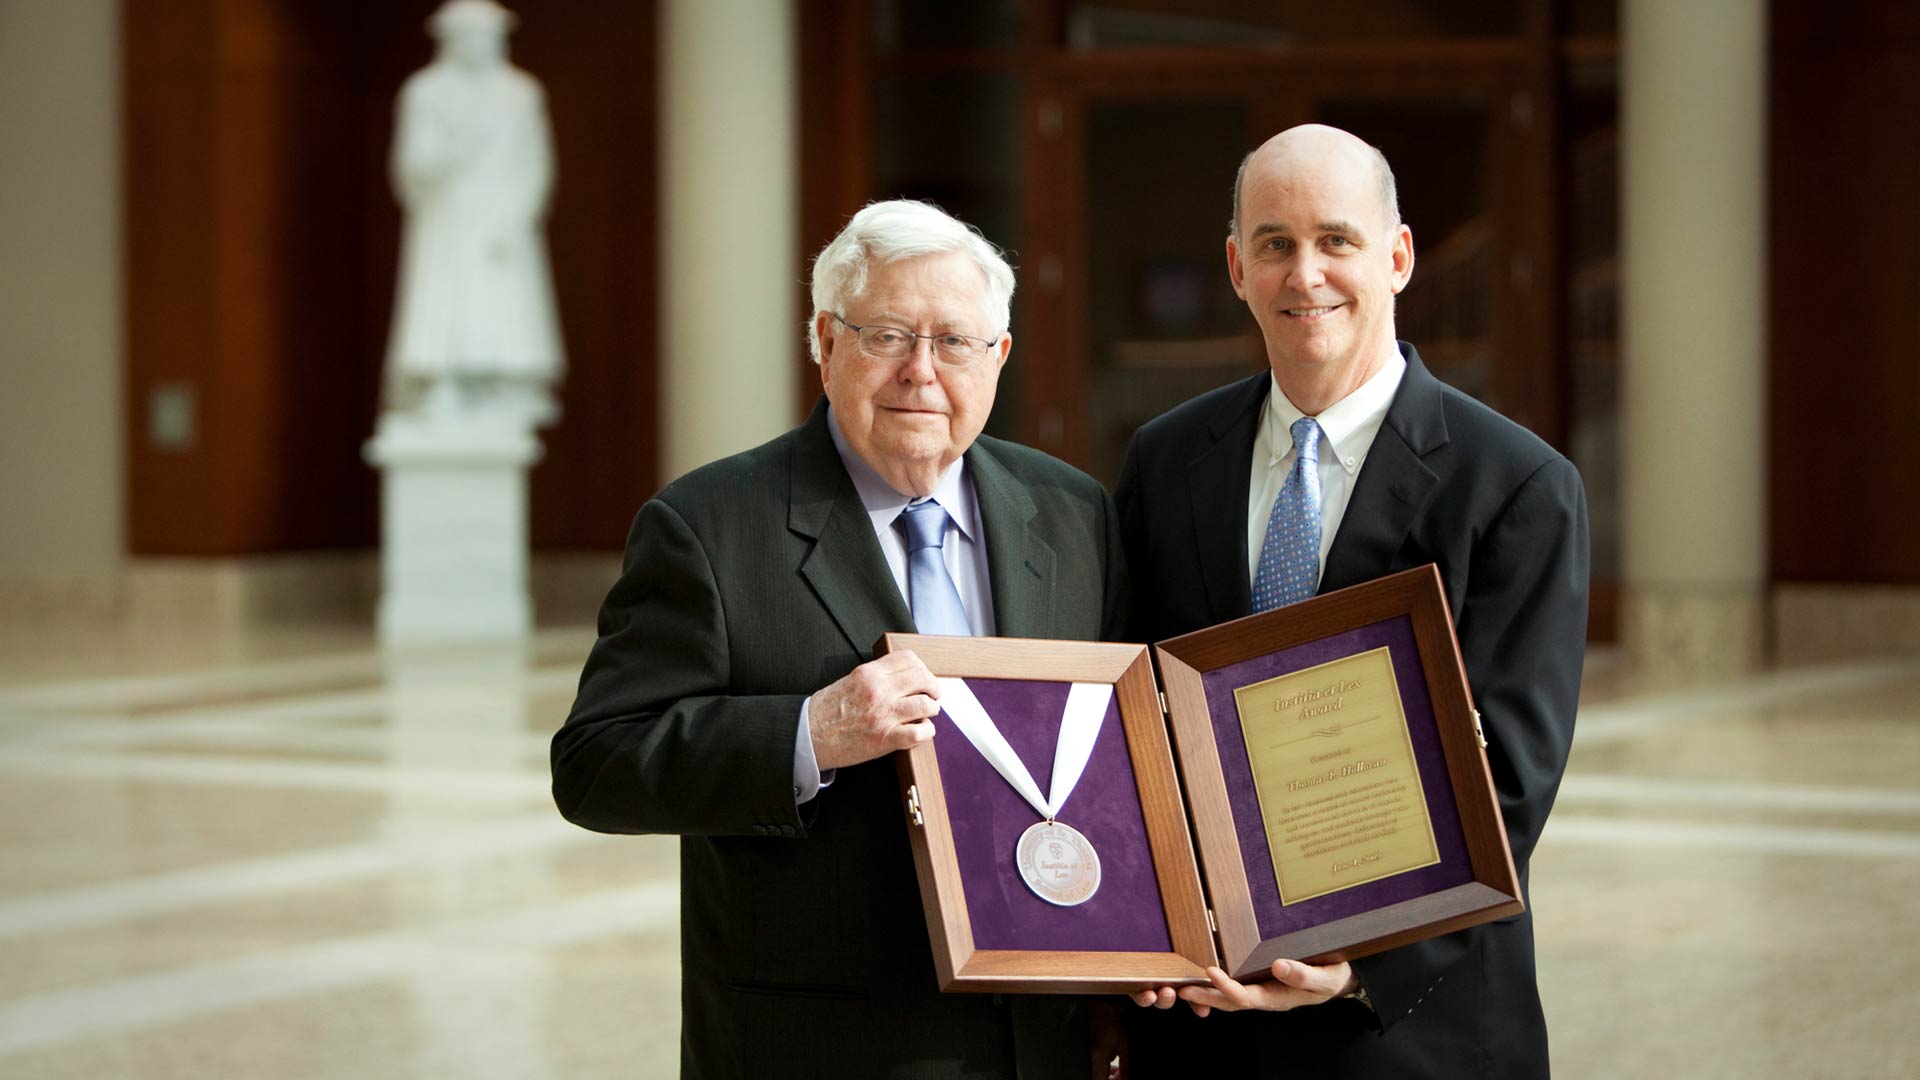 Thomas Holloran holds the Sol Humanae Dignatatus award.